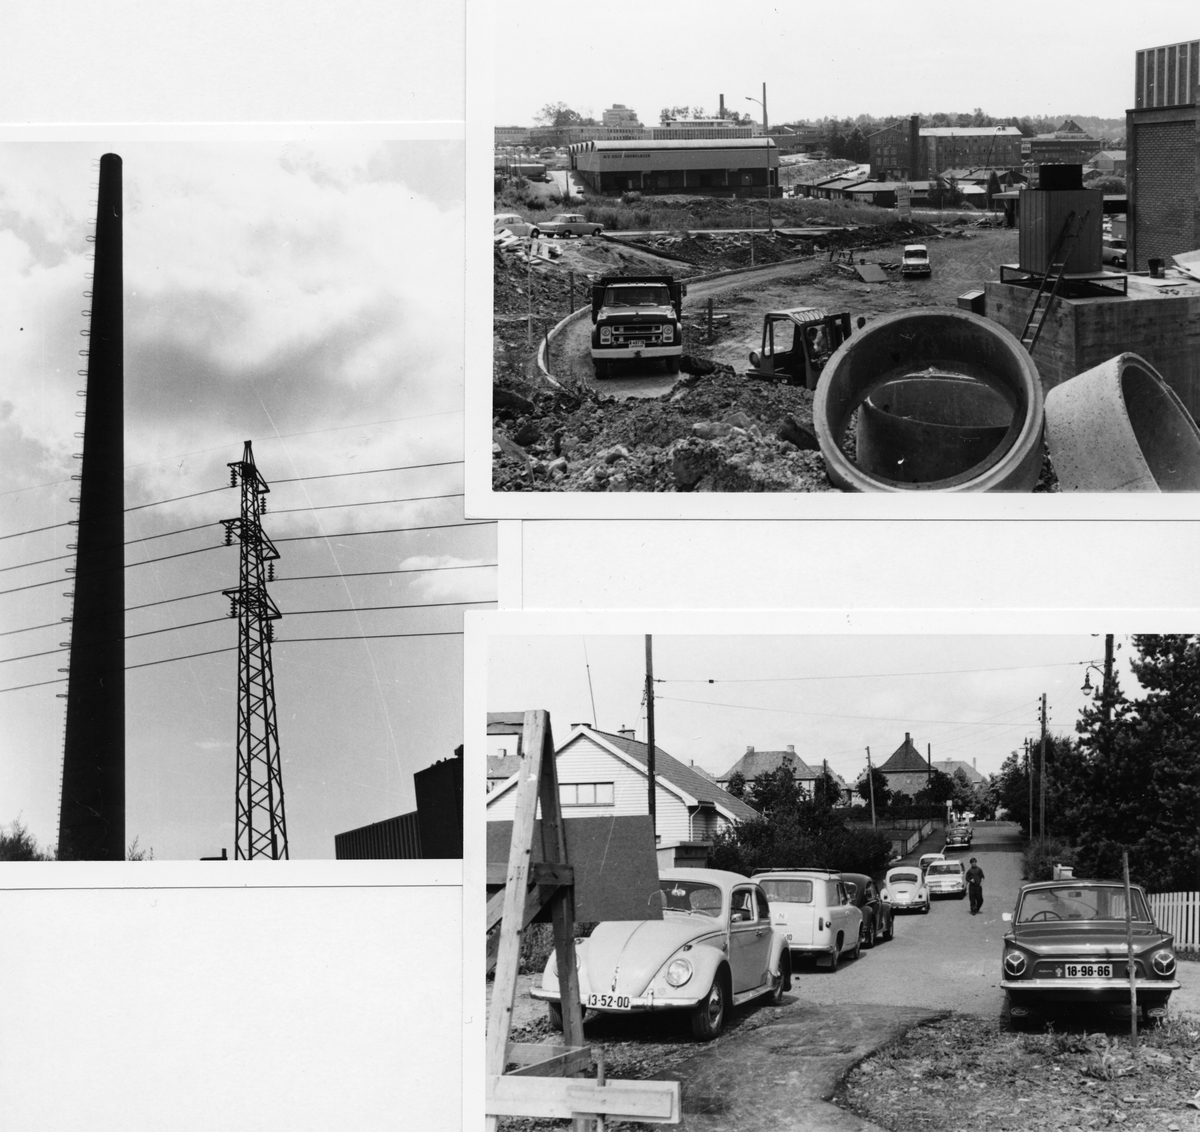 Byggeplass. 
Konstruksjon av J. L. Tiedemanns Tobaksfabrik på Hovin i 1968. Dette er et montasje av tre fotografier som viser byggeplassen og den store pipen på fabrikken men også en gate utenfor fabrikkområdet med parkerte biler og eneboliger.